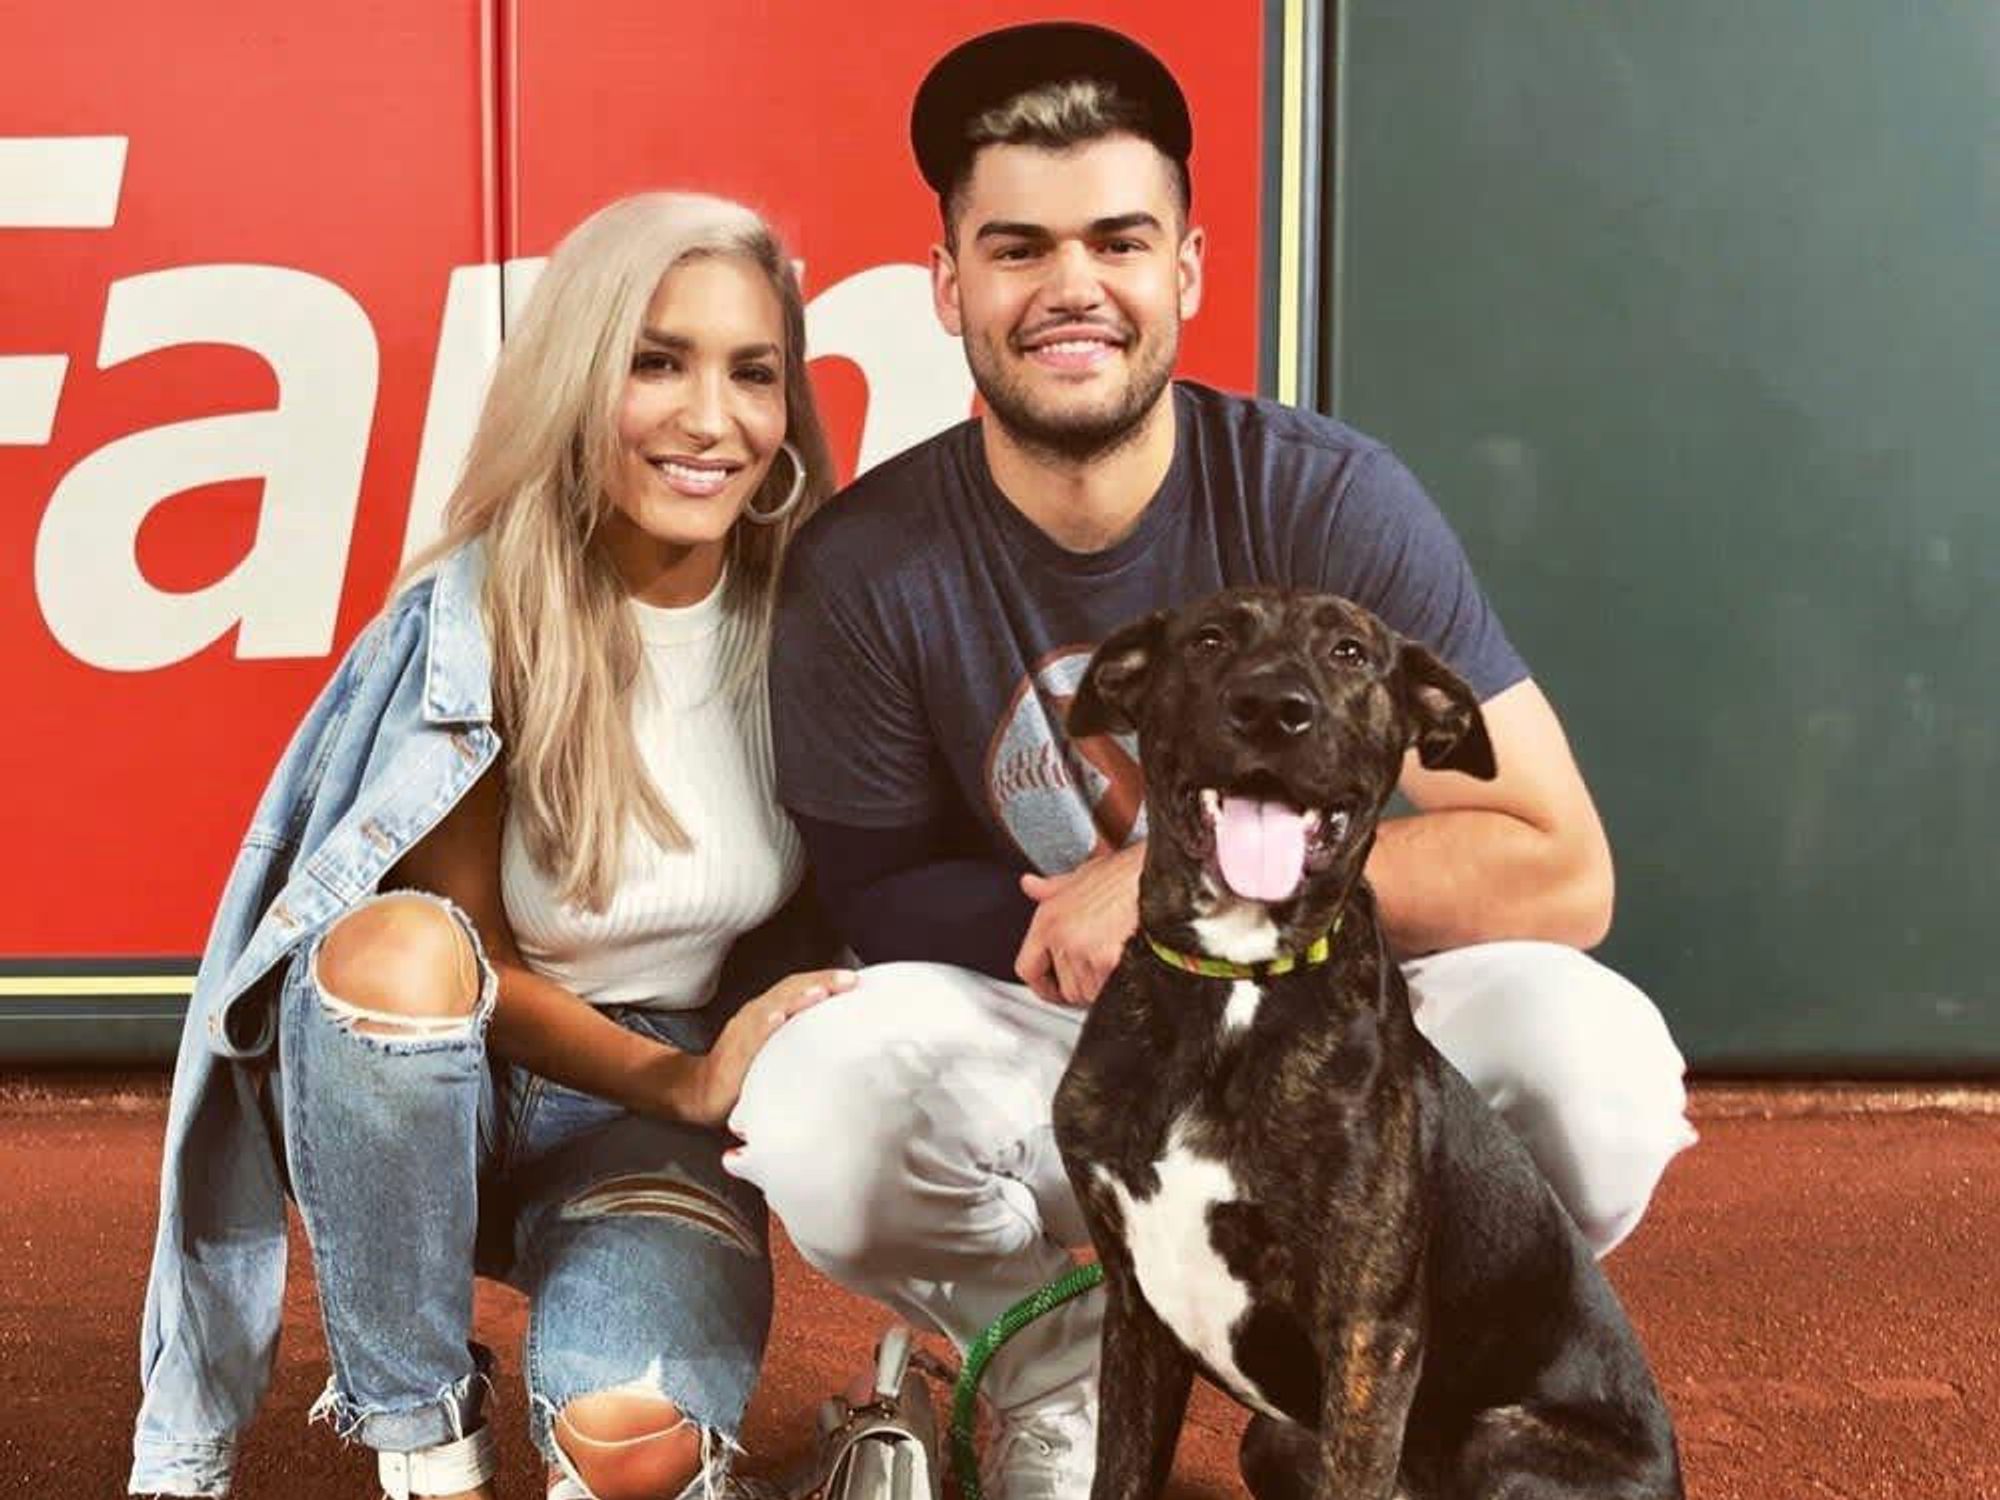 Dog Day  Houston Astros